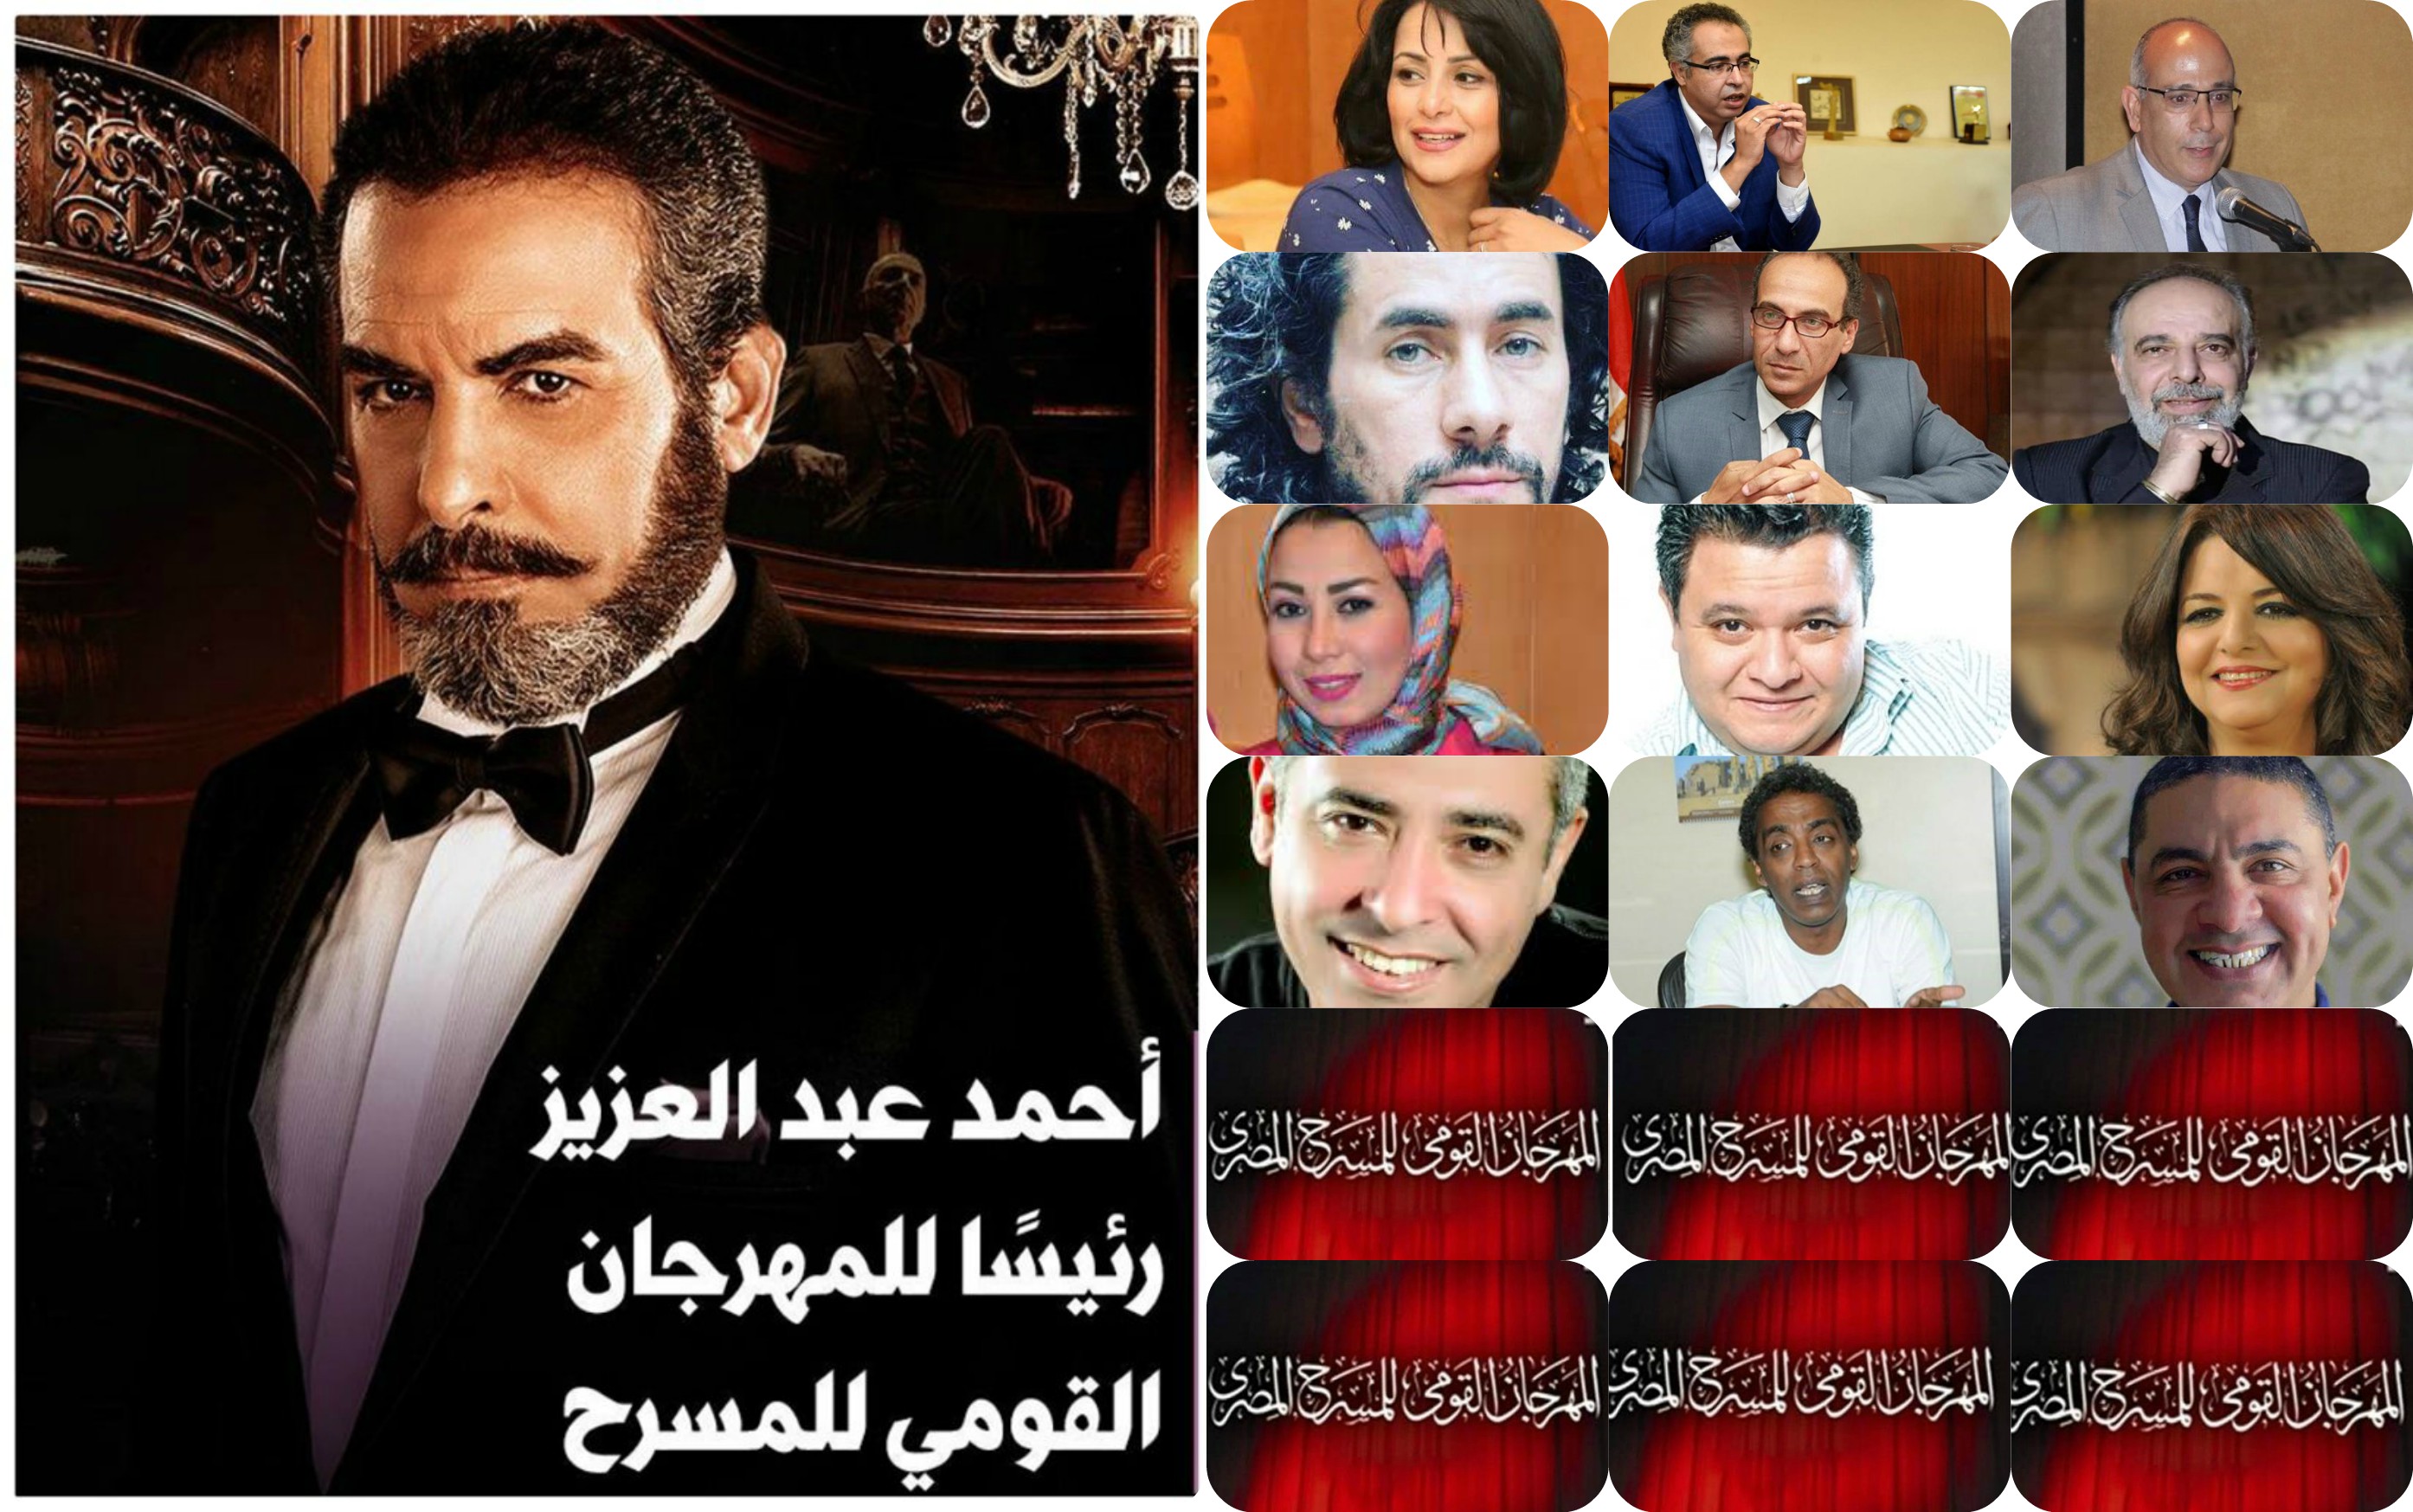 رئيس وأعضاء اللجنة العليا للمهرجان القومي للمسرح المصري